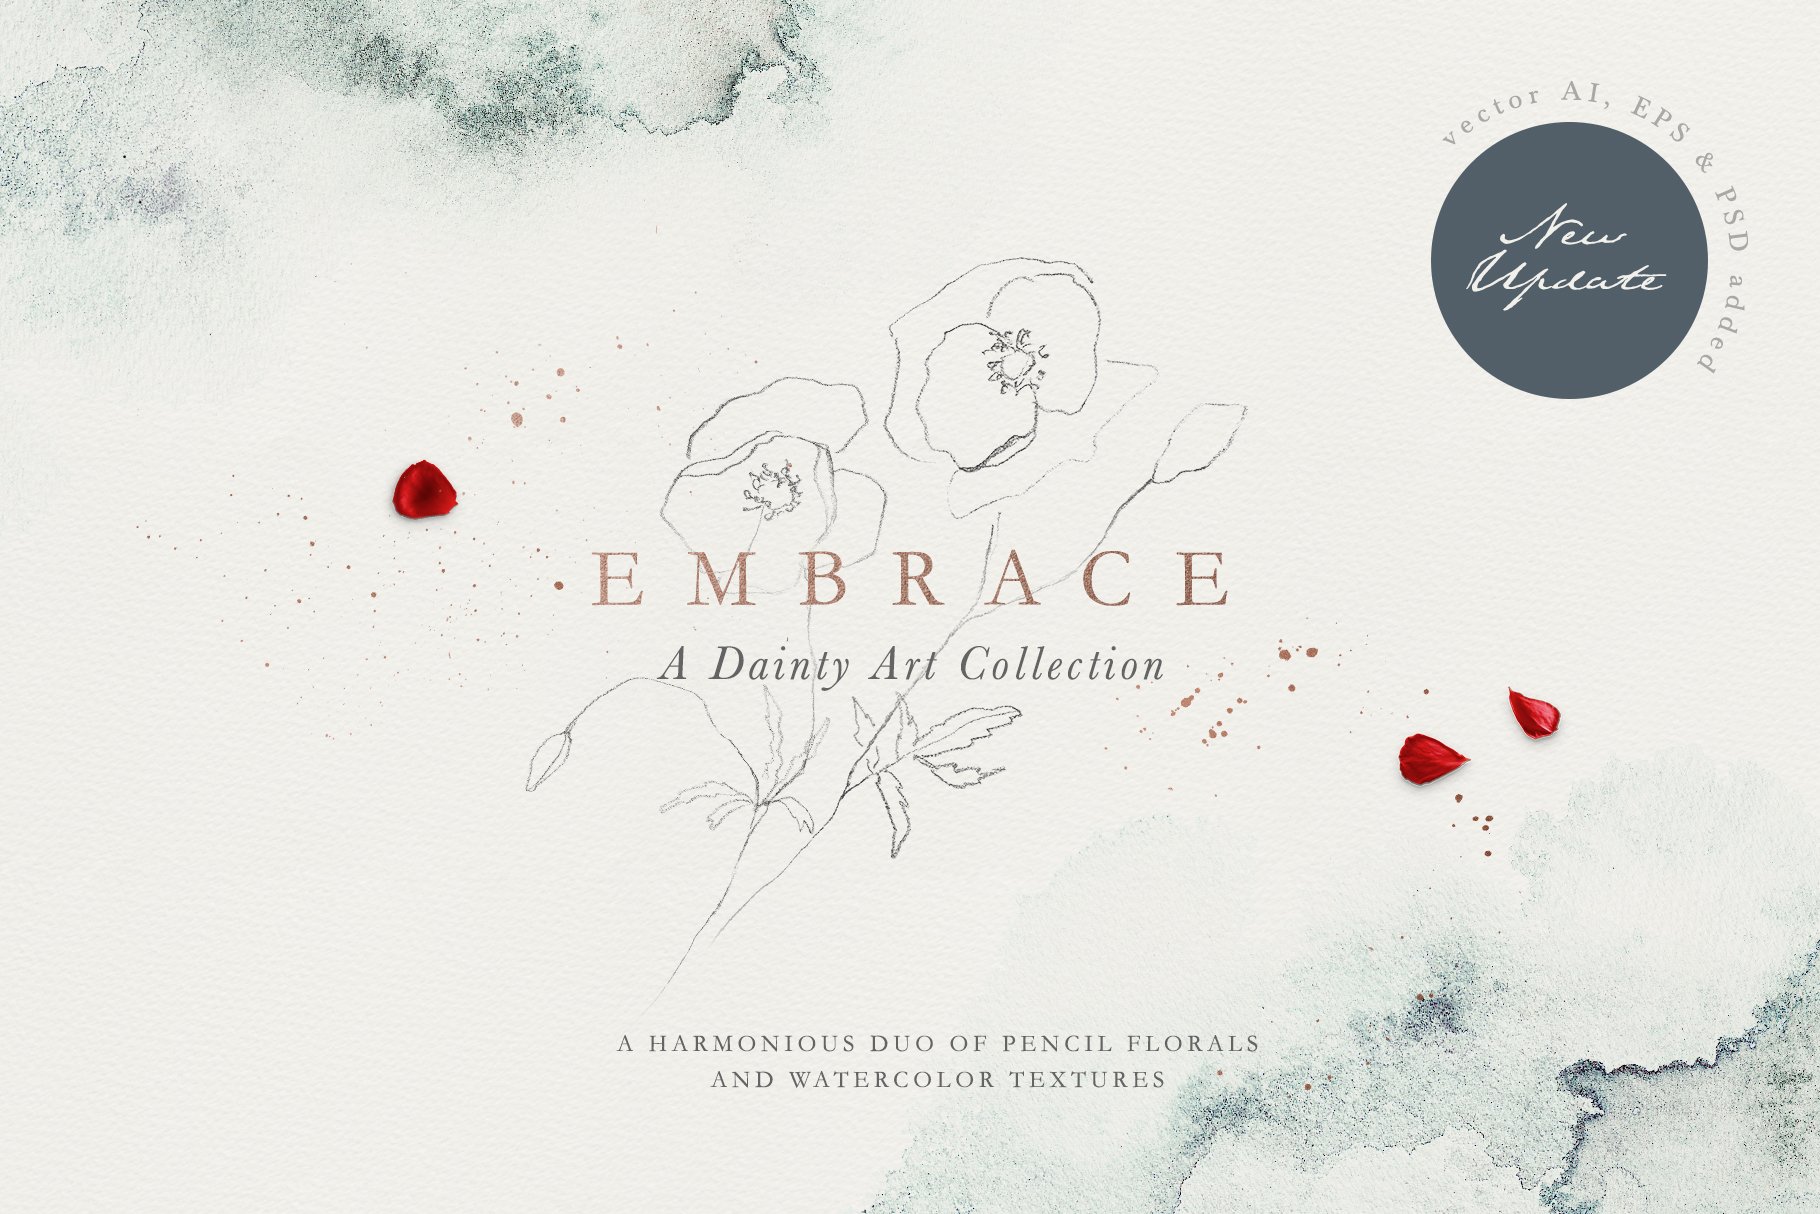 Embrace - Pencil Florals & Textures cover image.